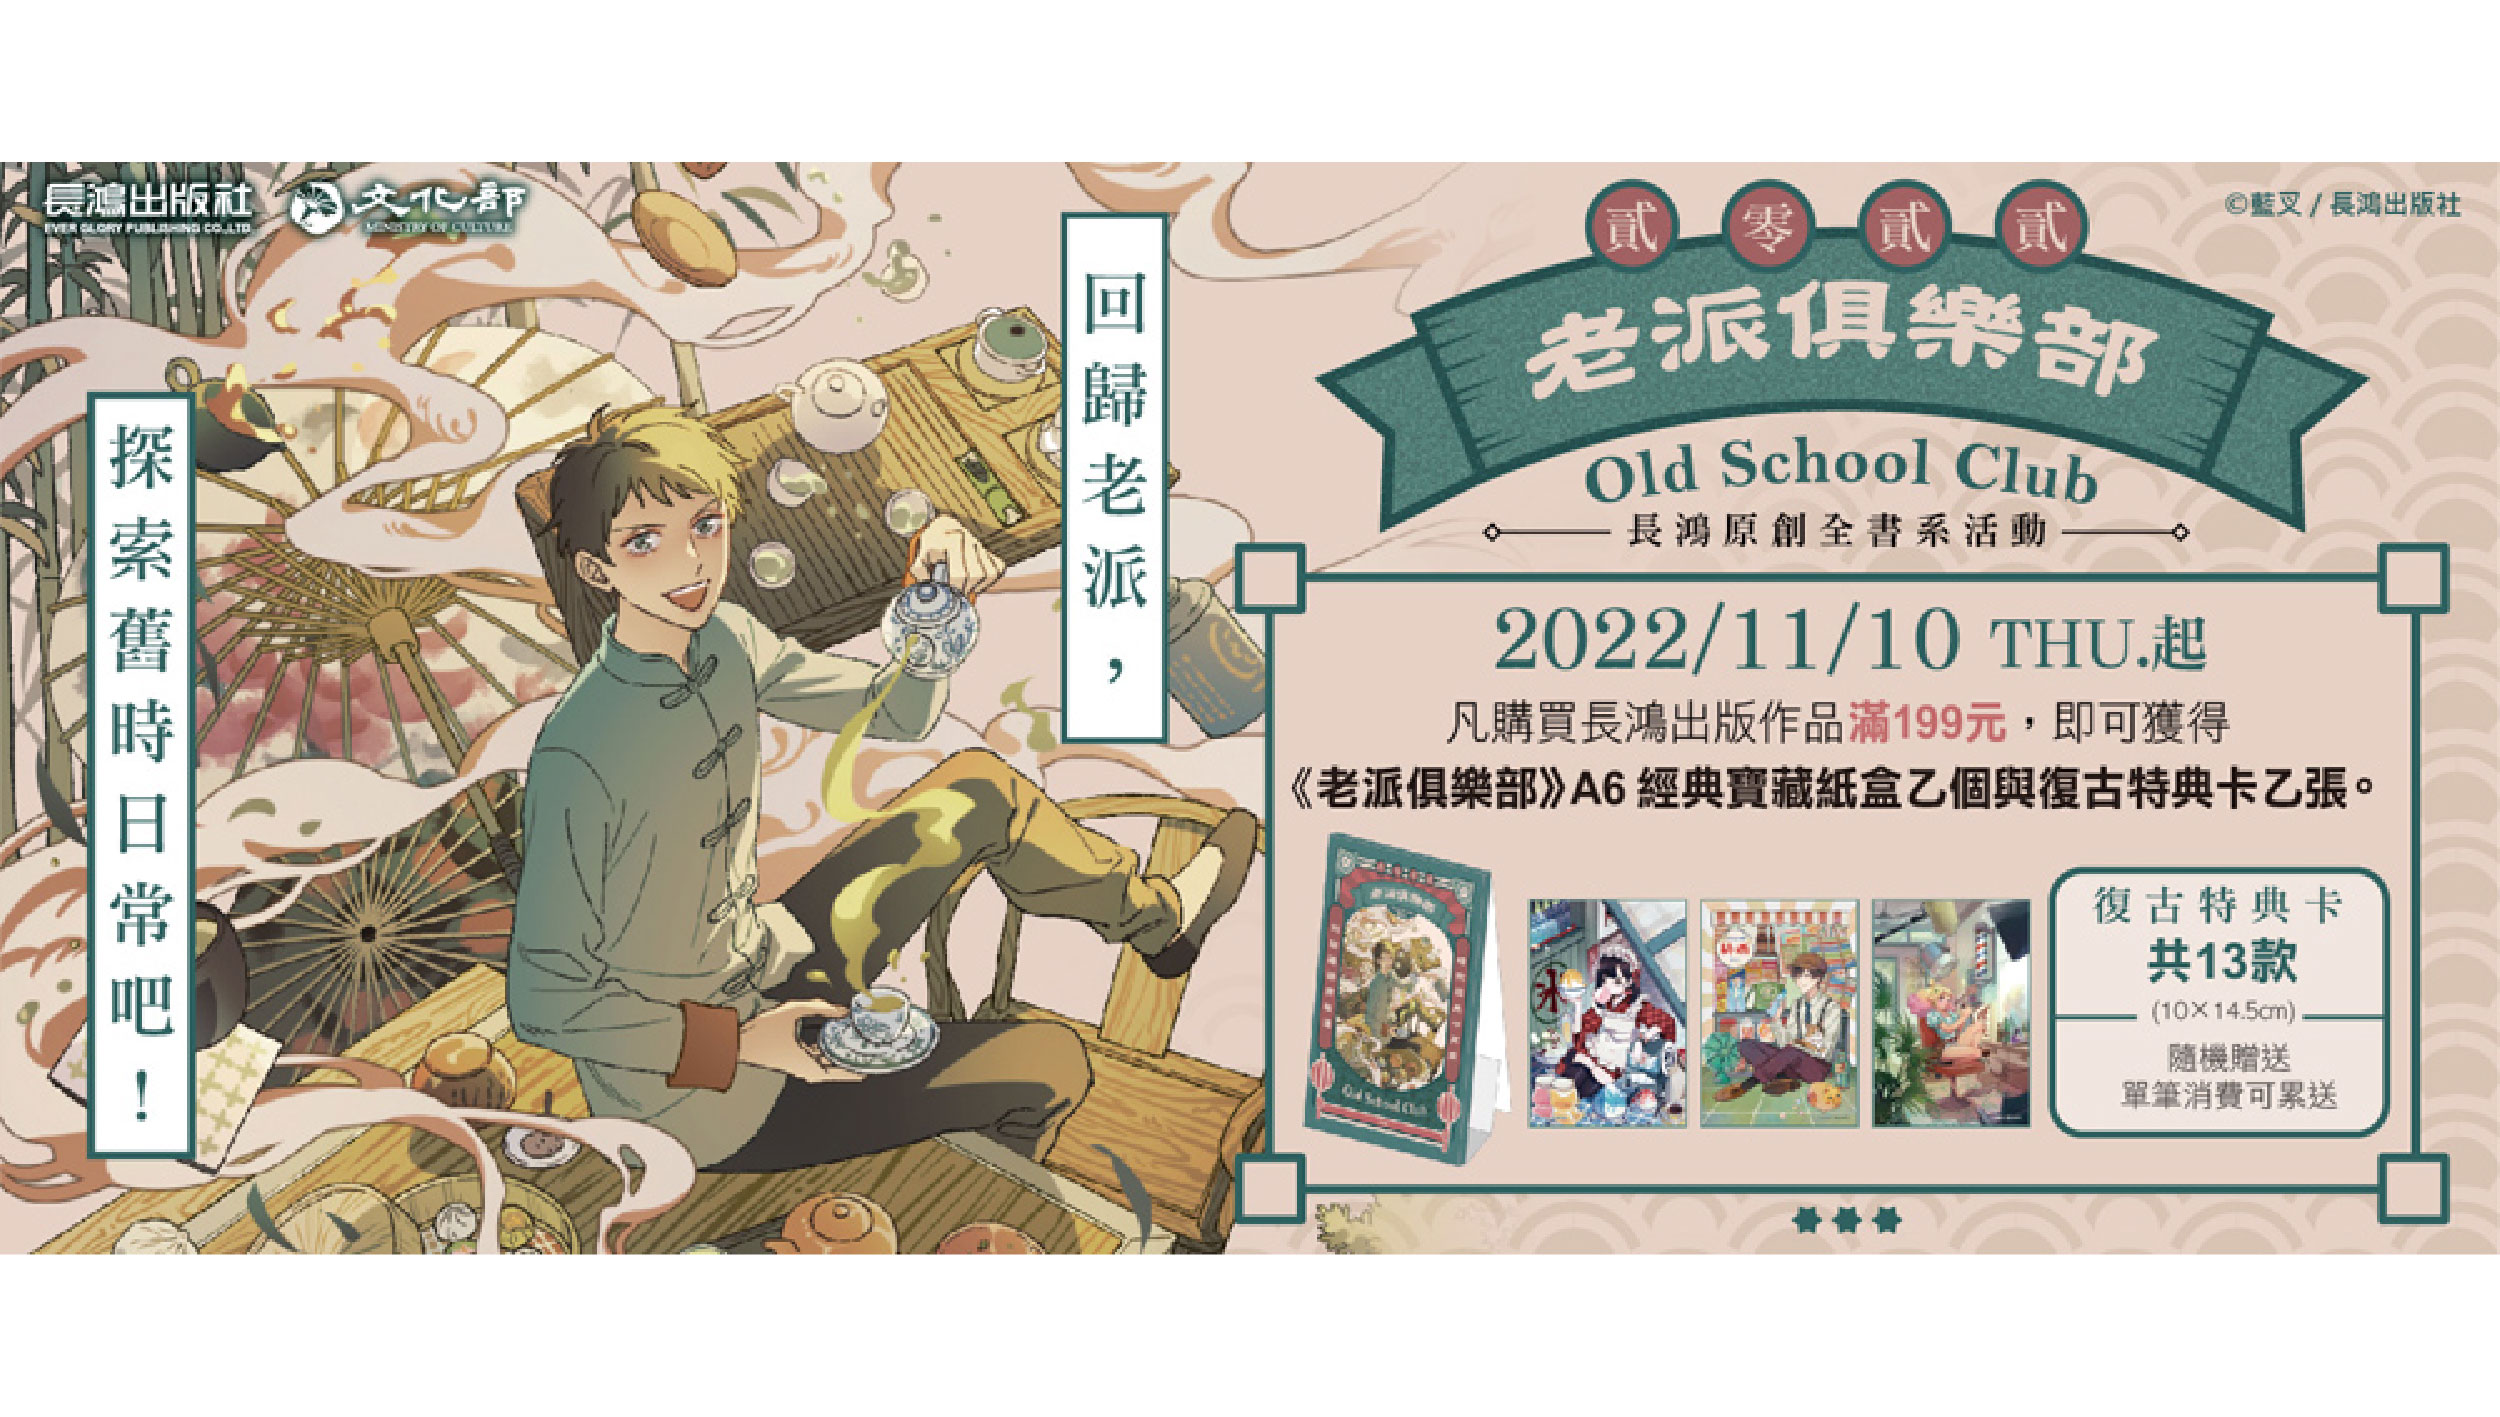 2022長鴻全書系活動《老派俱樂部》將於11月10日開跑！